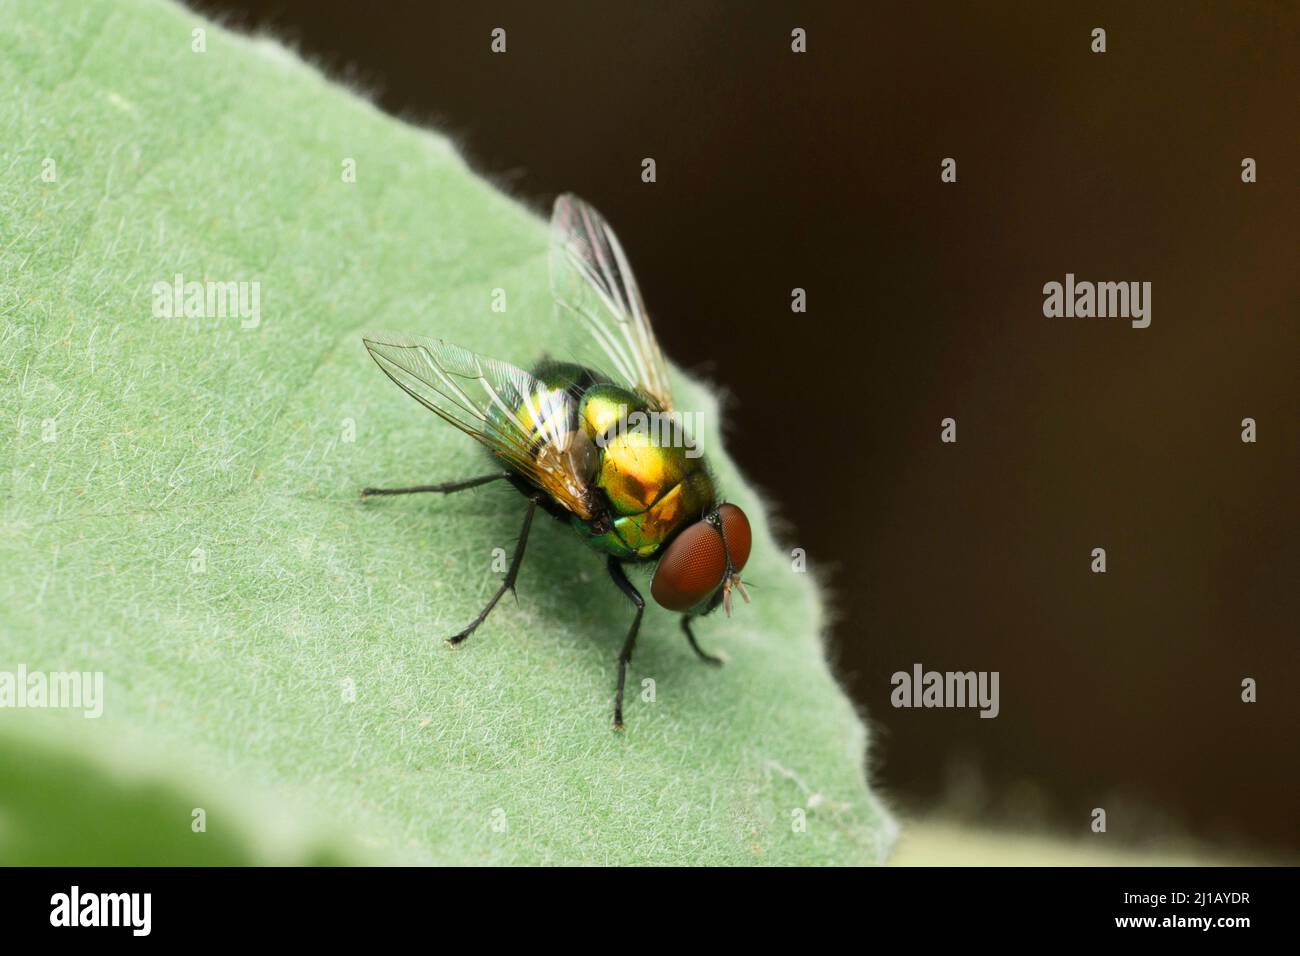 Jewel fly, Satara, Maharashtra, India Stock Photo